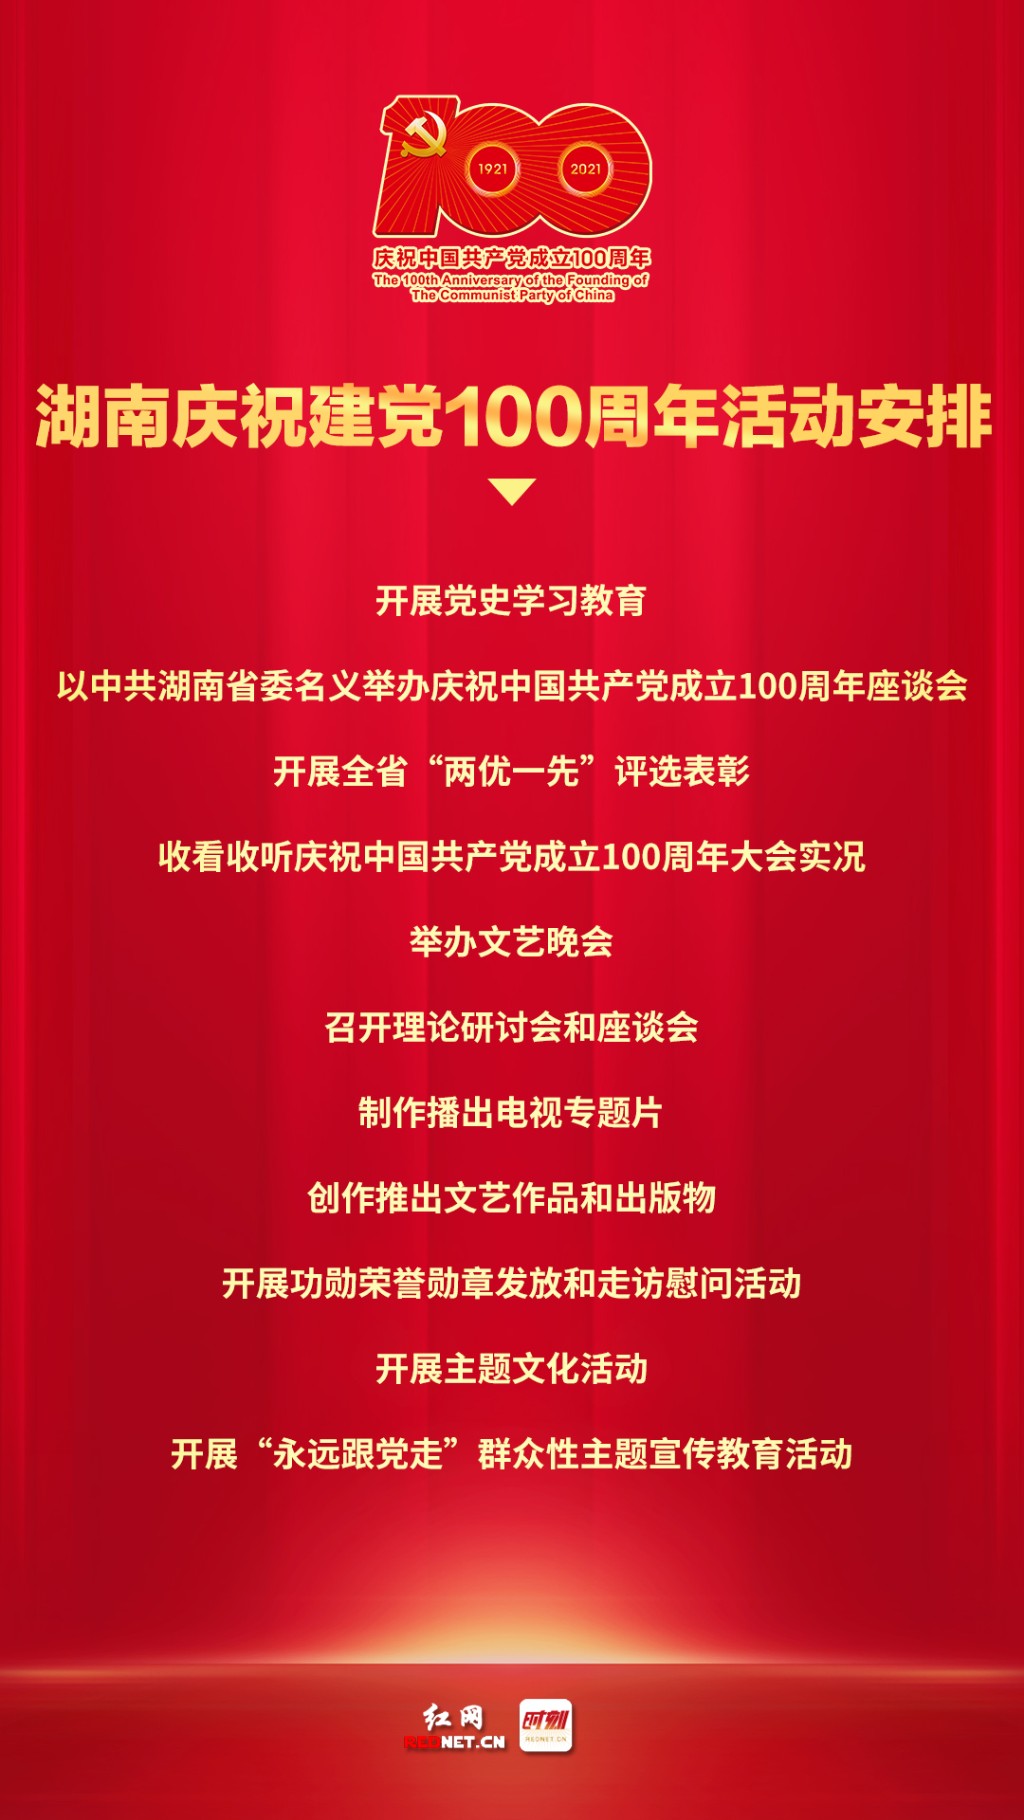 定了!湖南庆祝建党100周年活动这样安排